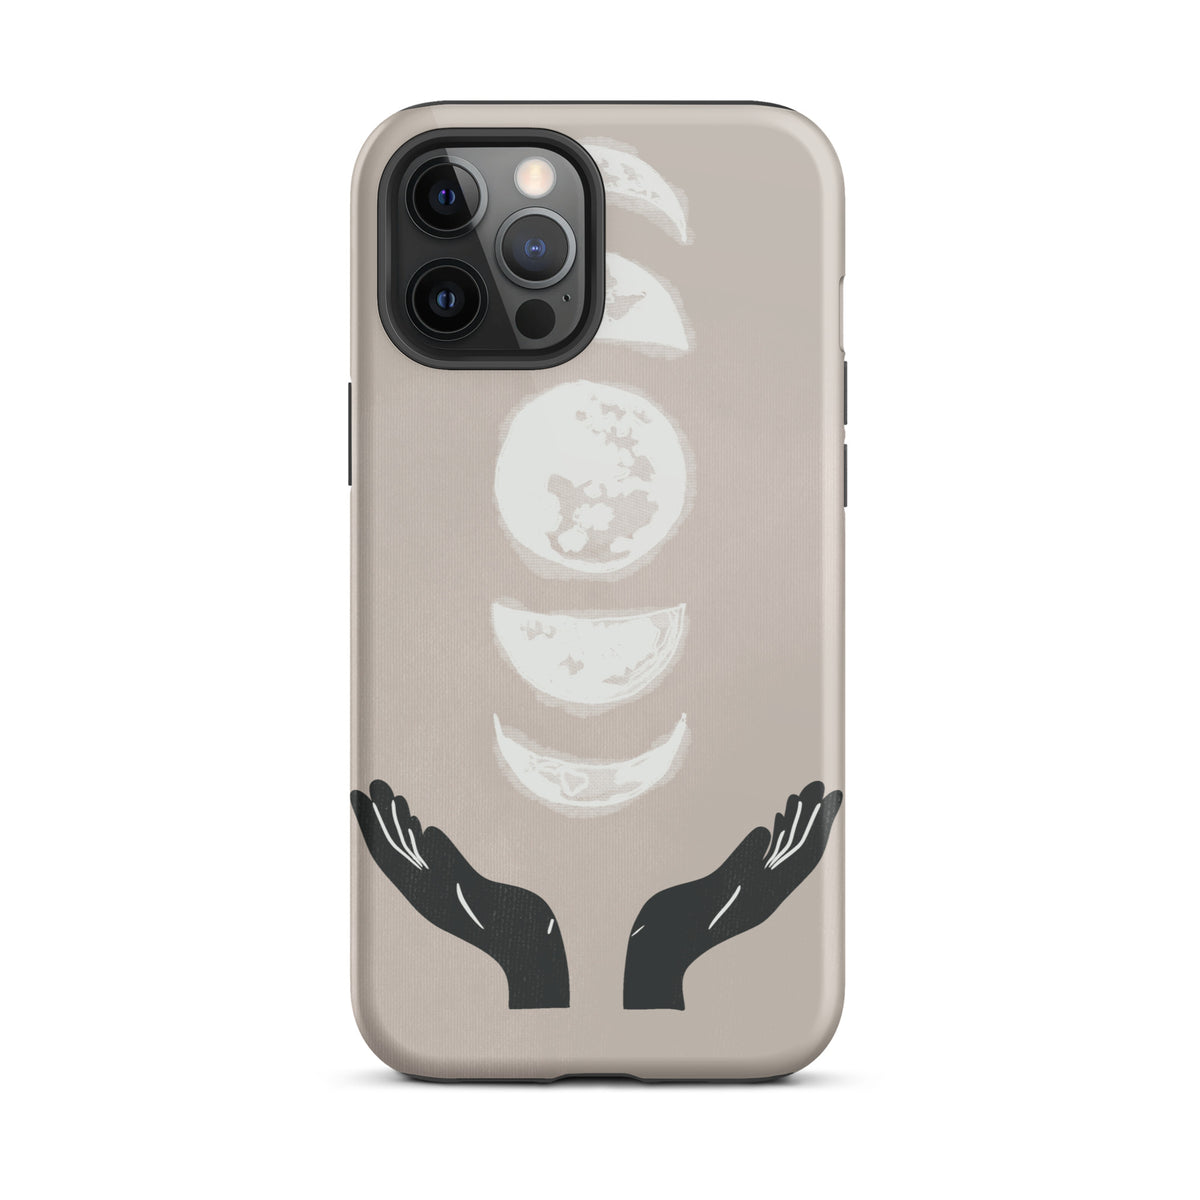 Moon hands iPhone case